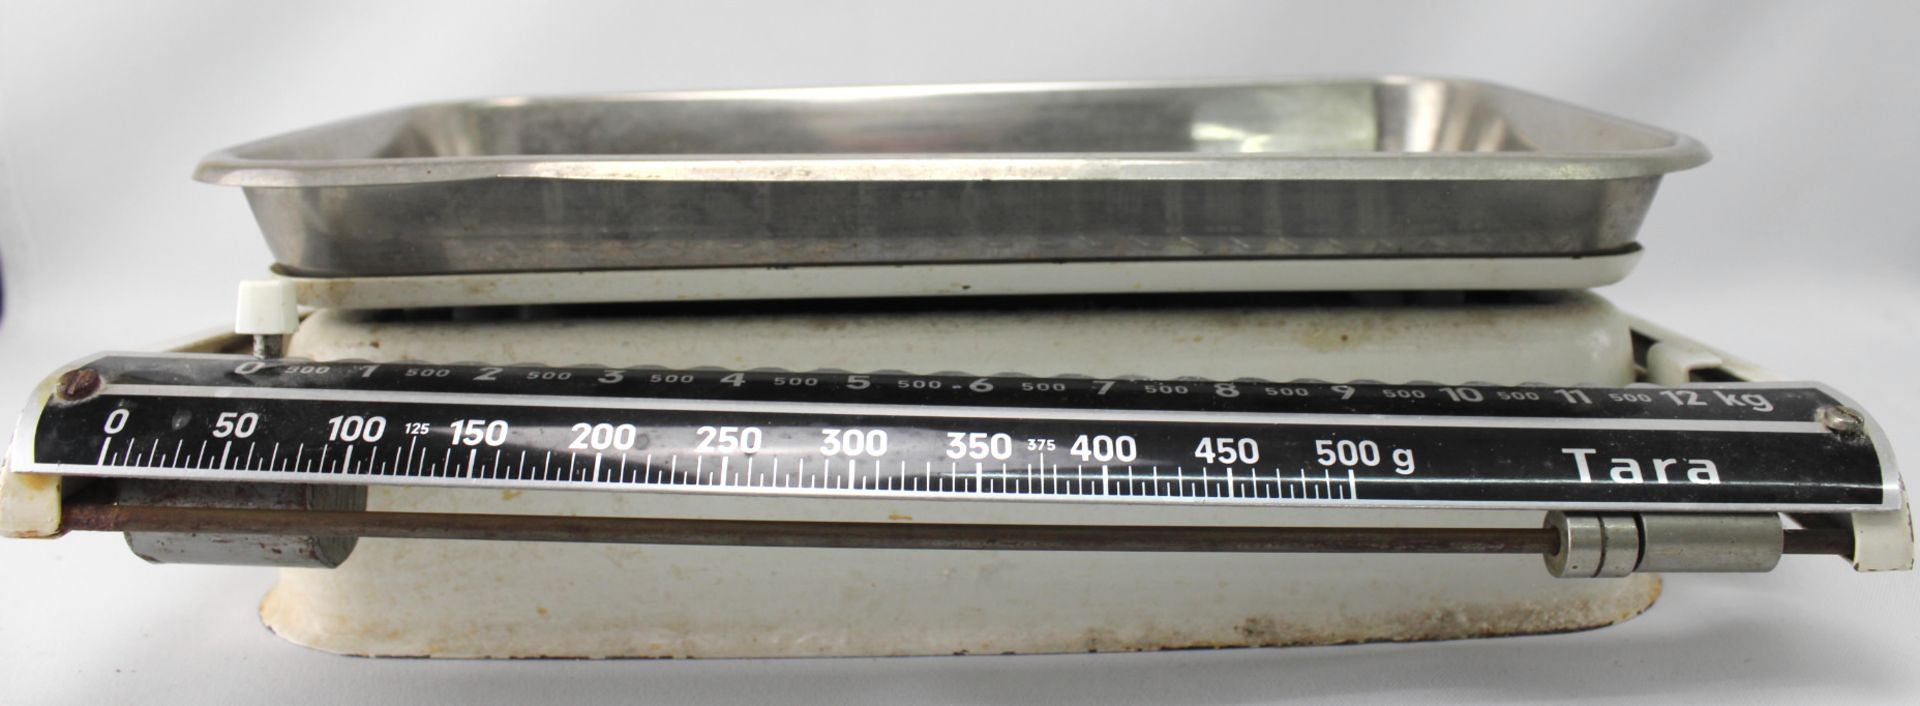 Küchenwaage Eisen bis 12kg - Image 2 of 2